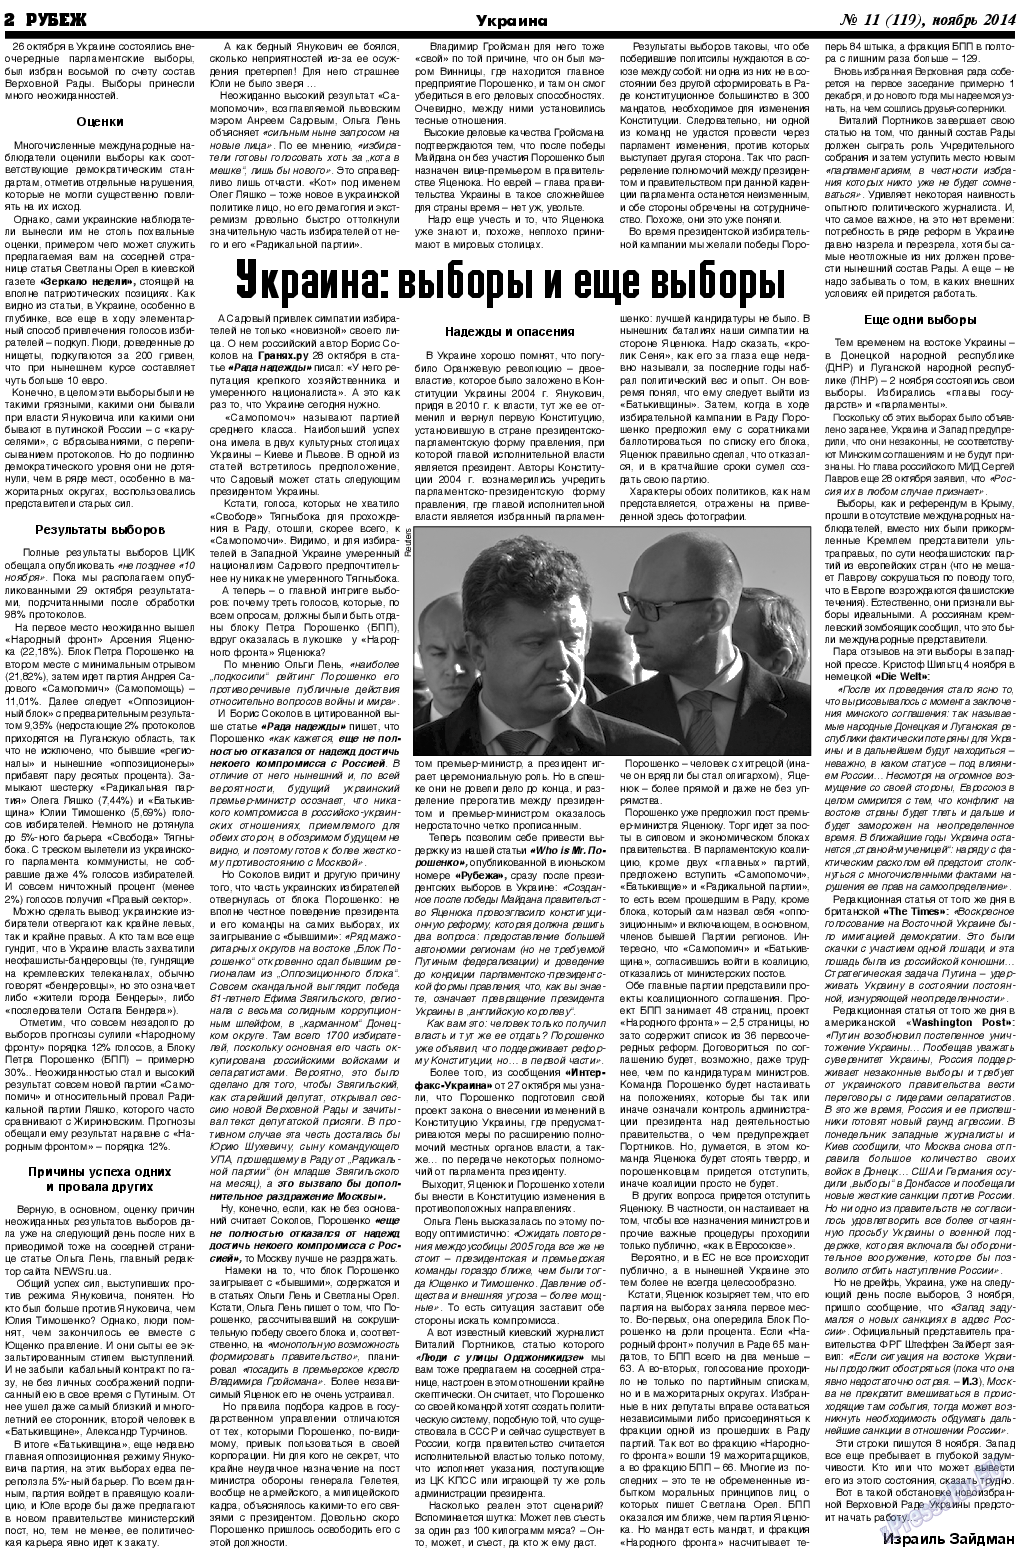 Рубеж (газета). 2014 год, номер 11, стр. 2